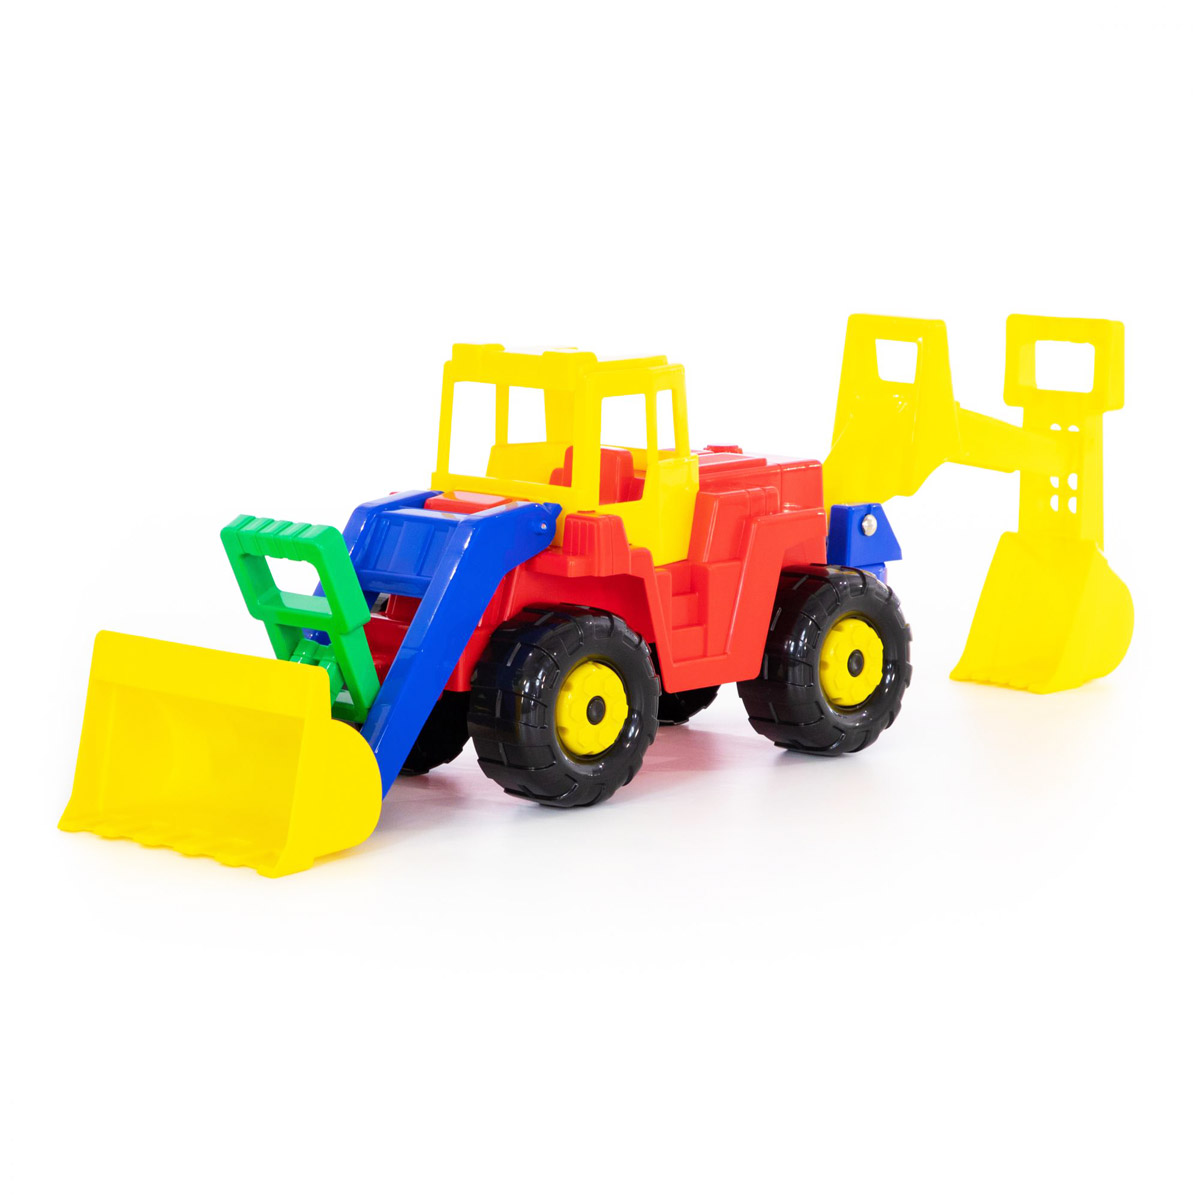 Іграшковий трактор - екскаватор 'Батир'